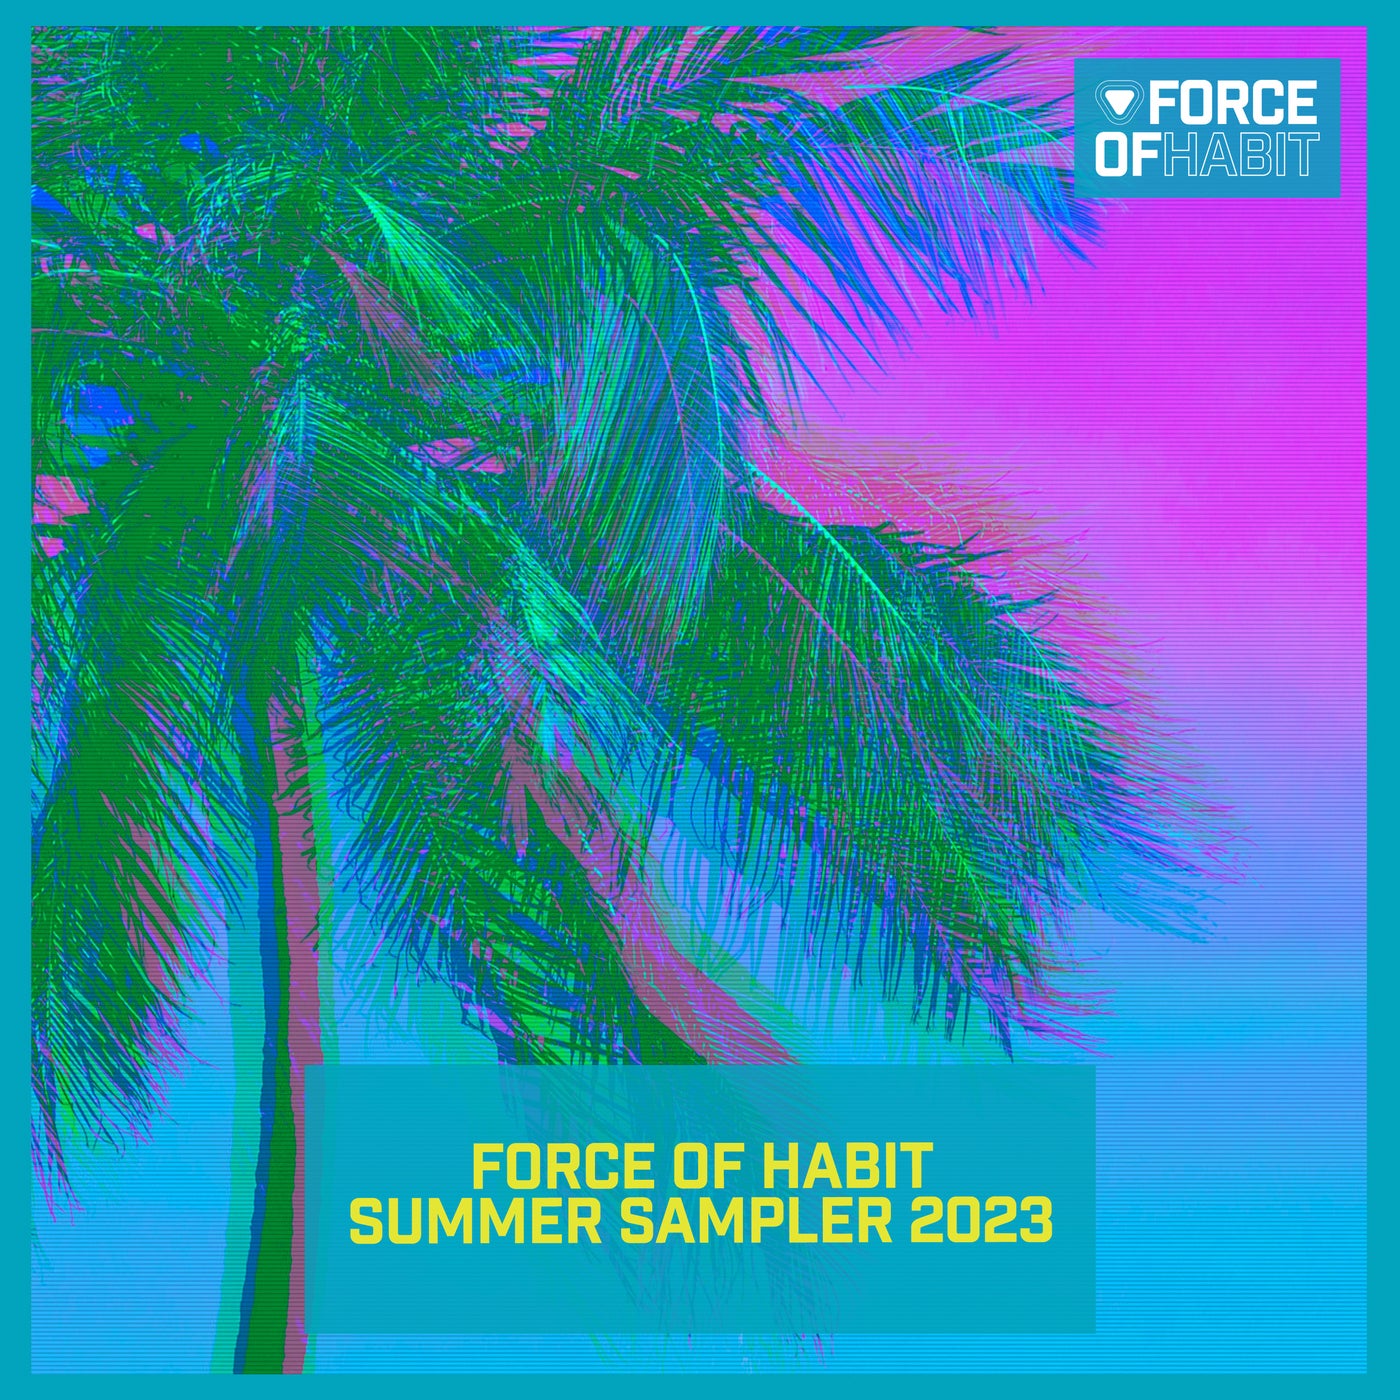 Force of Habit Summer Sampler 2023